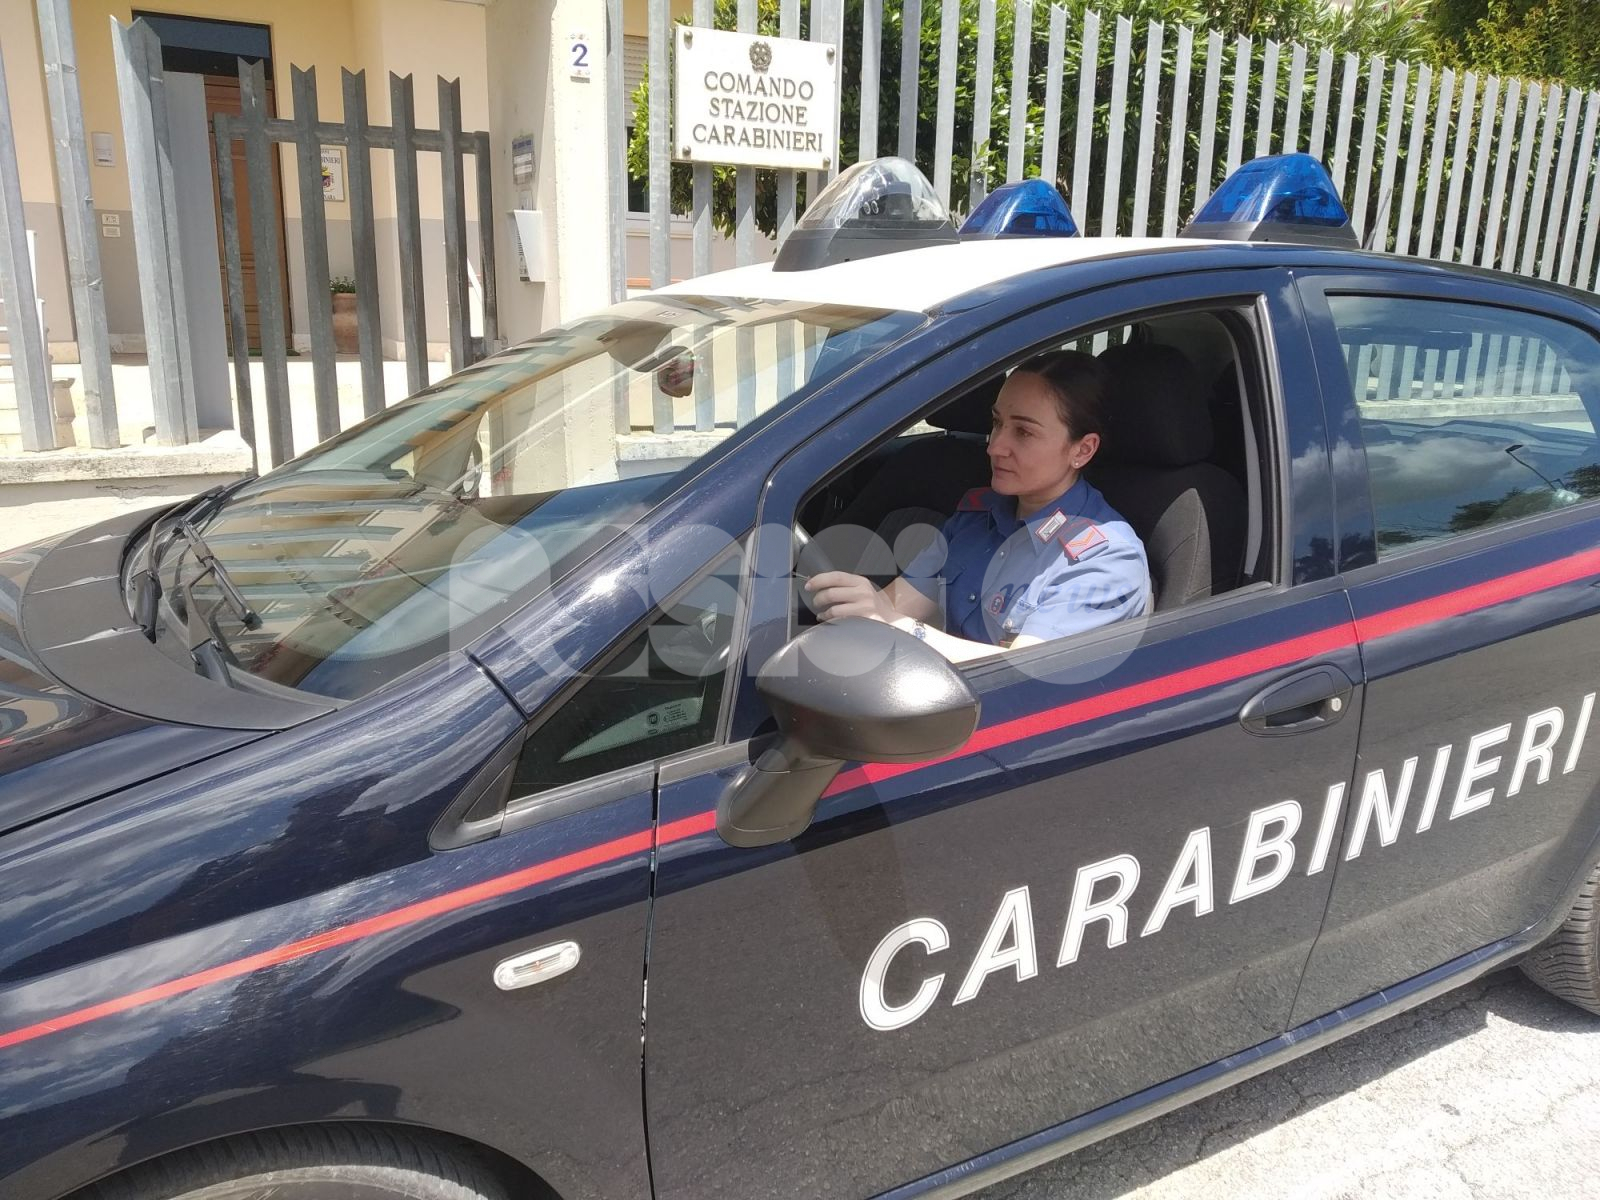 Visita un amico ai domiciliari e finge di essere una carabiniera: denunciata